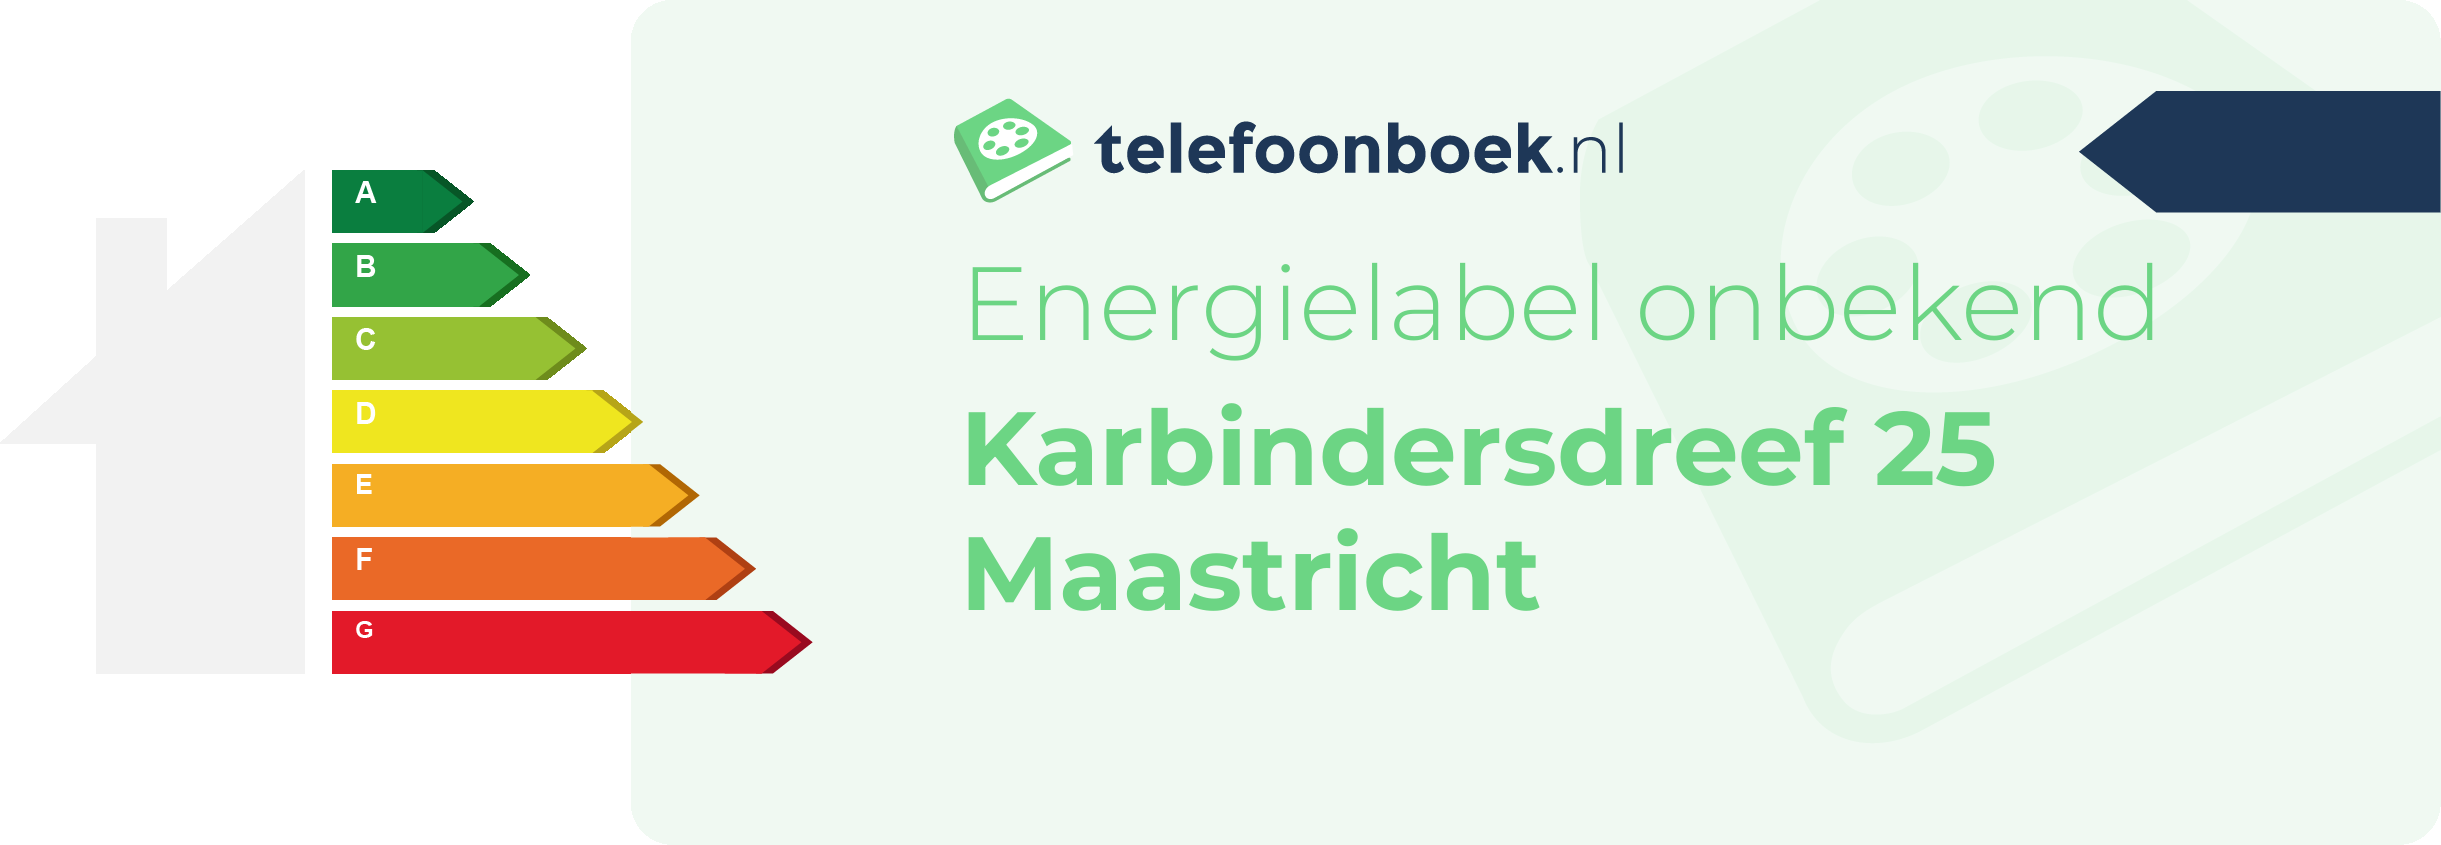 Energielabel Karbindersdreef 25 Maastricht